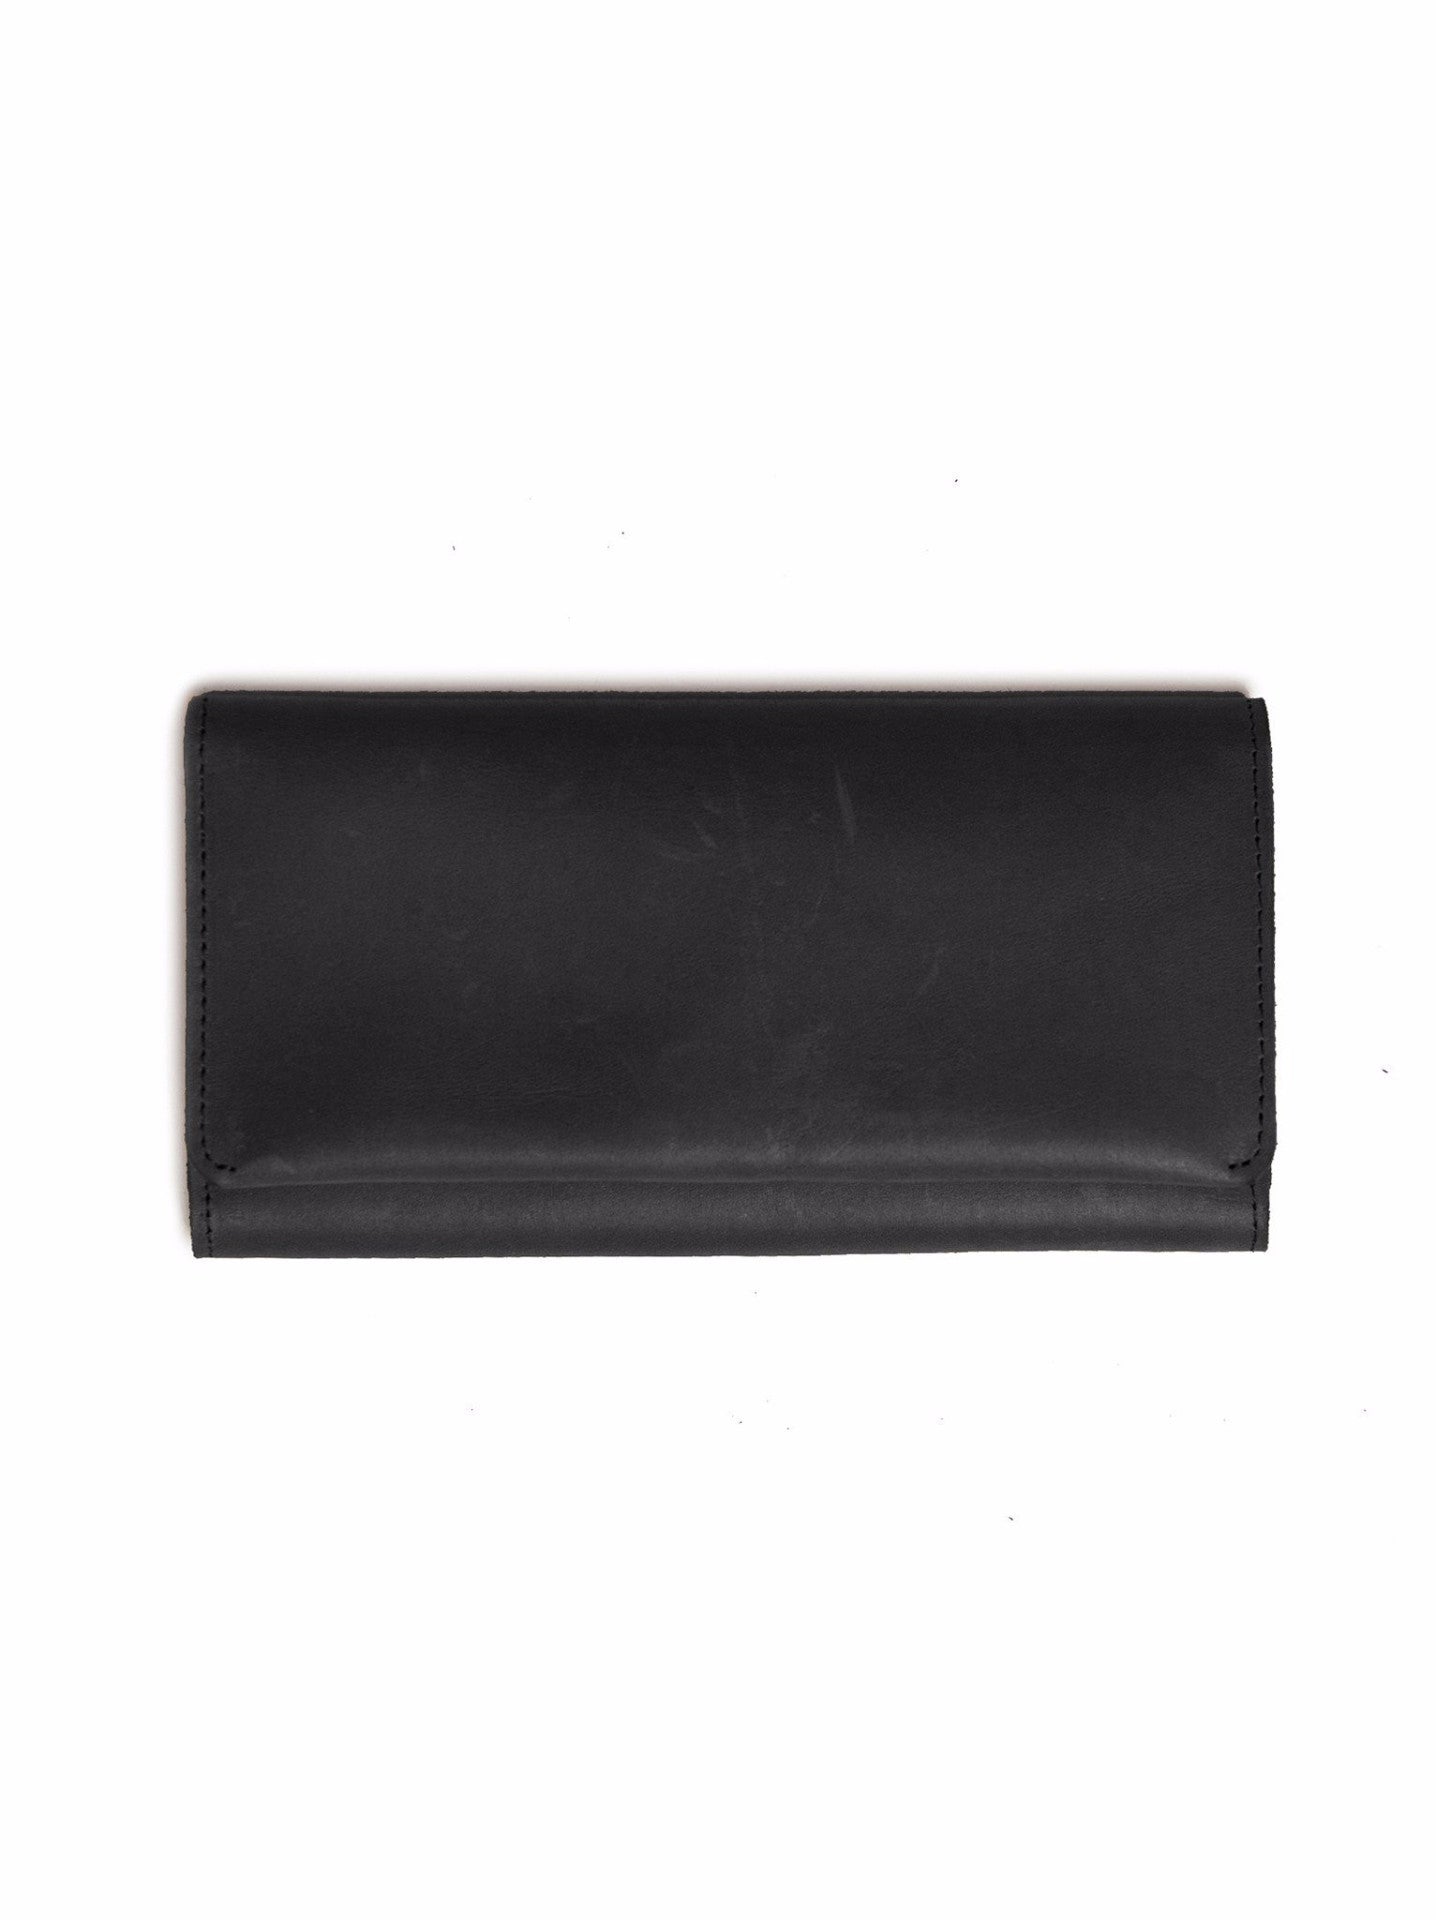 black leather wallet fashionable studio 319 debre wallet